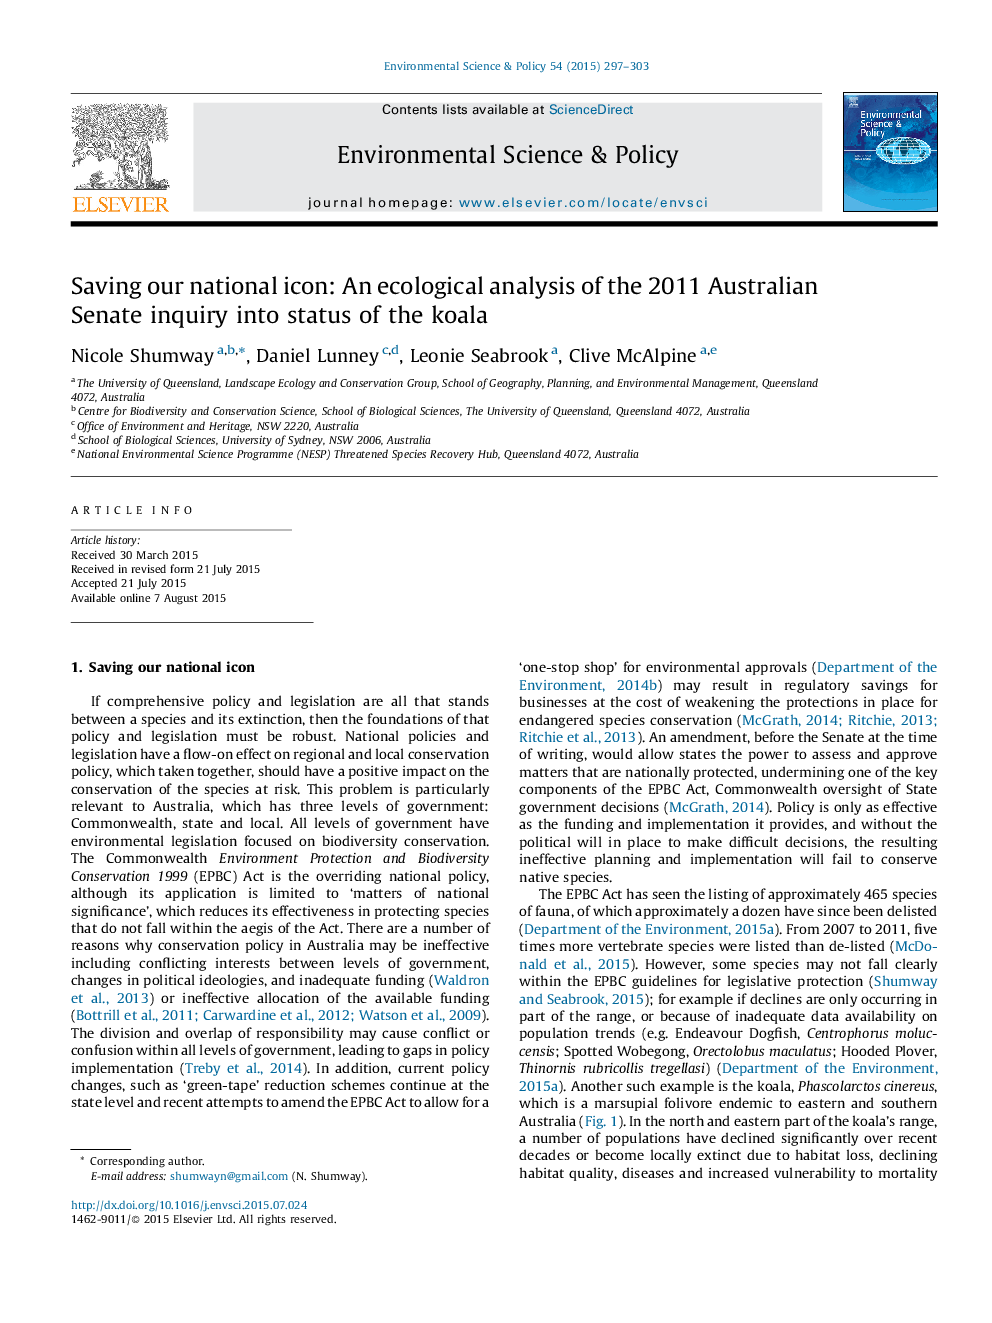 صرفه جویی در آیکون ملی ما: تجزیه و تحلیل اکولوژیک از سنا استرالیا 2011 بررسی وضعیت کوالا 